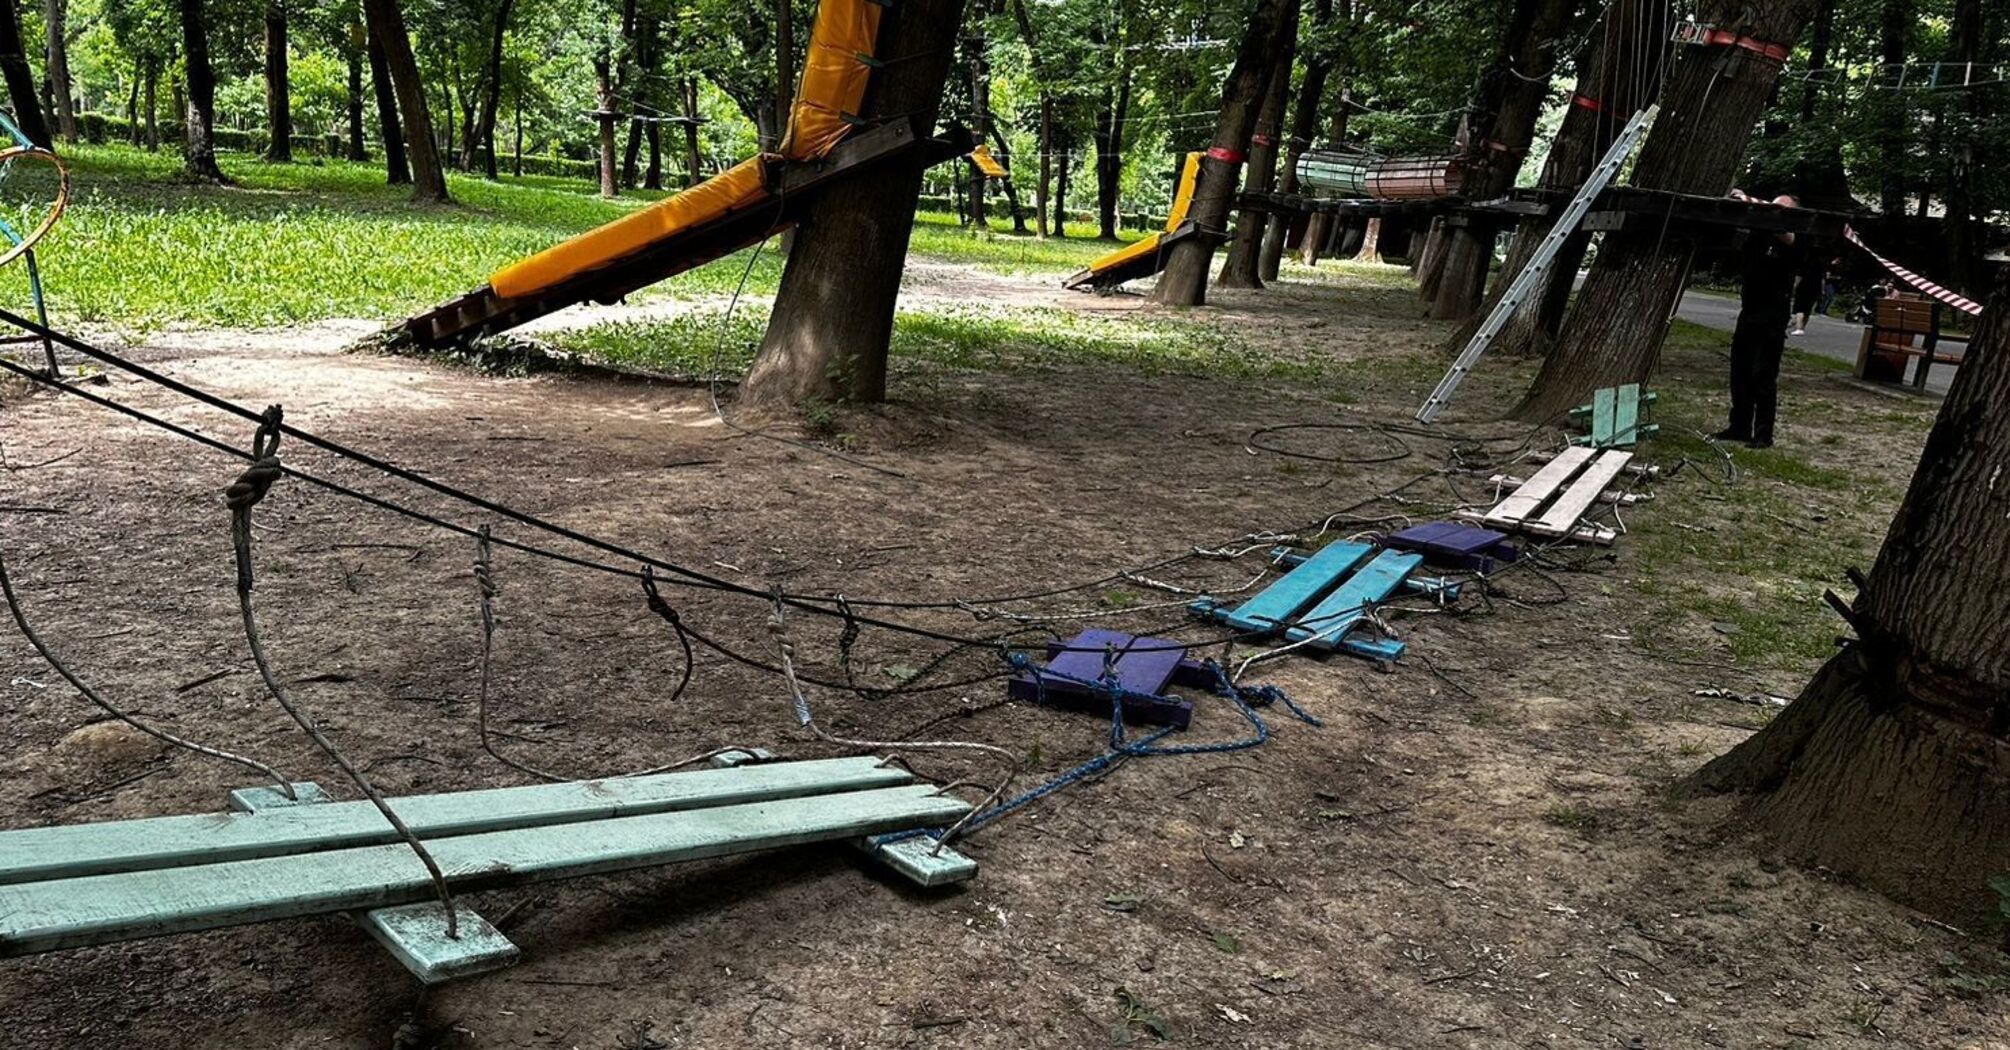 Постраждали 16 дітей: в Ужгороді обірвався трос мотузкового атракціону (фото)